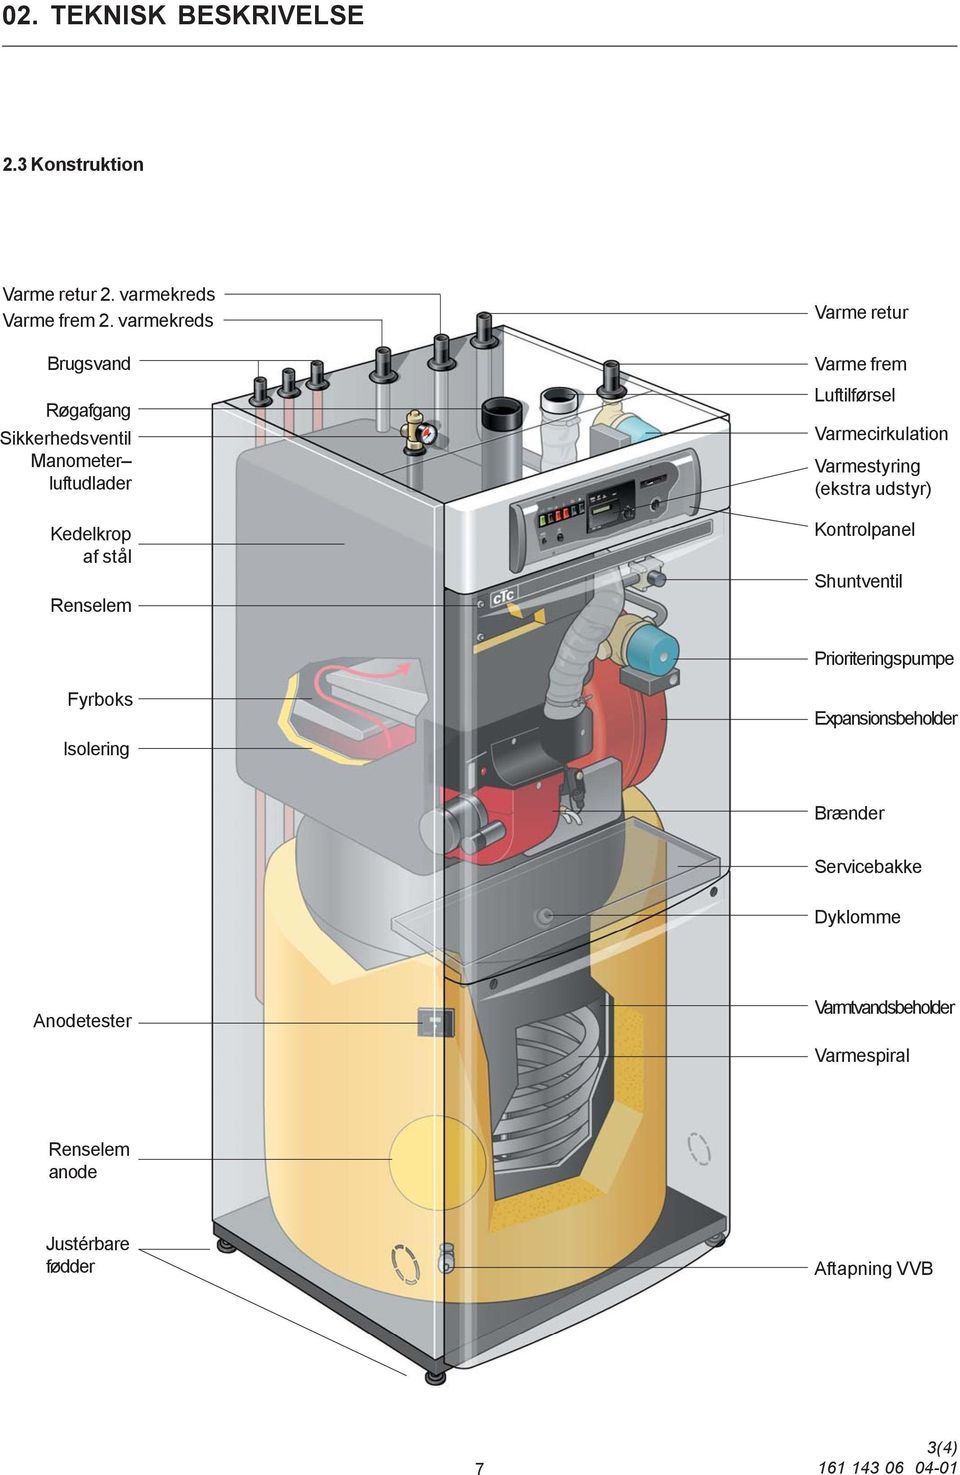 Luftilførsel Varmecirkulation Varmestyring (ekstra udstyr) Kontrolpanel Shuntventil Prioriteringspumpe Fyrboks Isolering